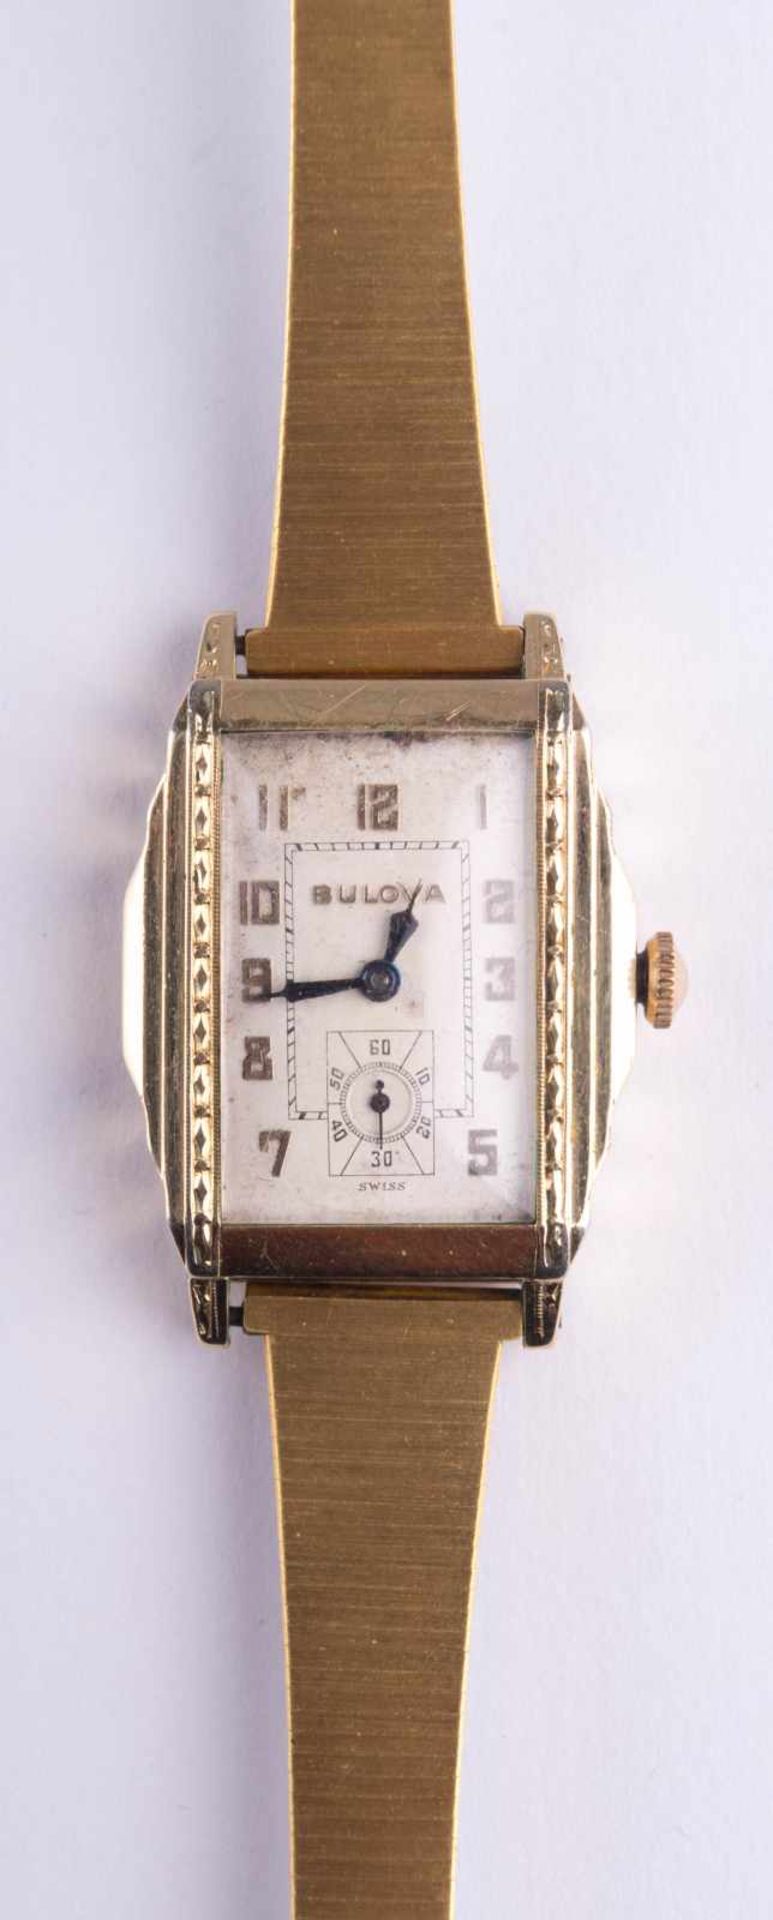 Herren Uhr Bulova um 1935 / Men´s watch, Bulova about 1935 im Scharniergehäuse Goldfild, rundes